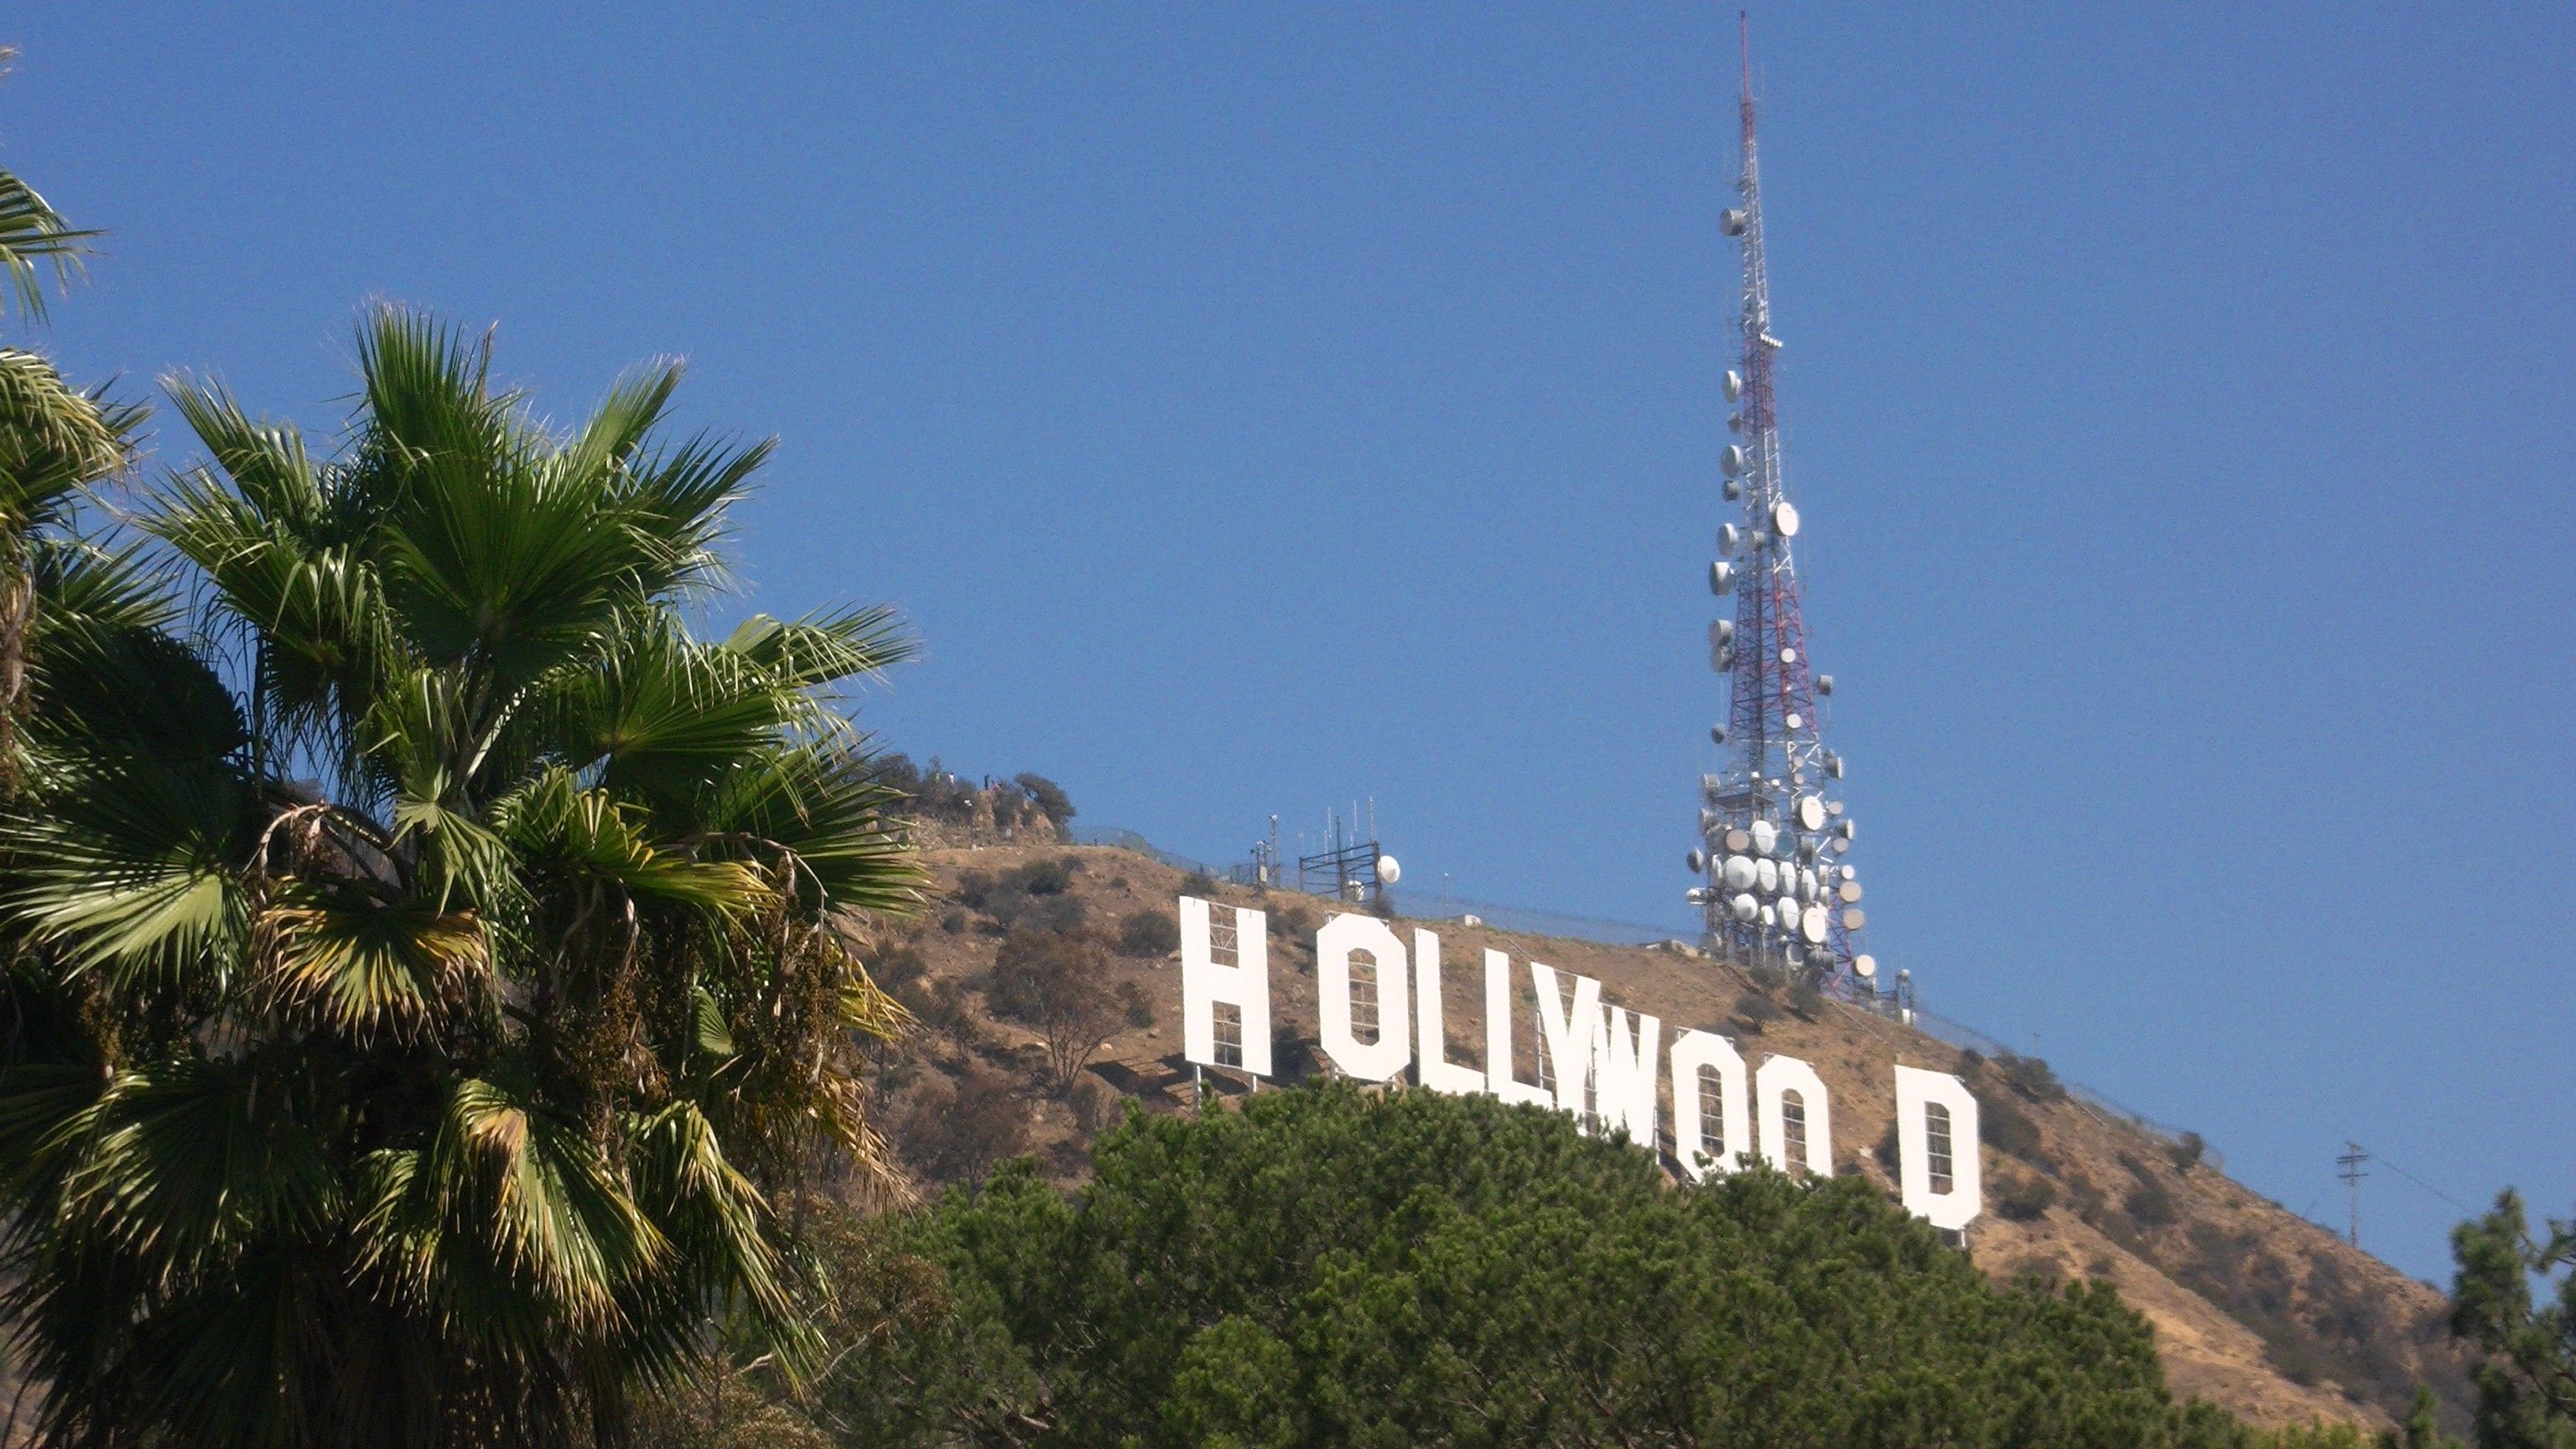 Голливуд это город. Лос-Анджелес Калифорния Голливуд. США Лос Анджелес Голливуд. Лос-Анджелес Калифорния надпись Голливуд. Лос Анджелес достопримечательности Голливуд.